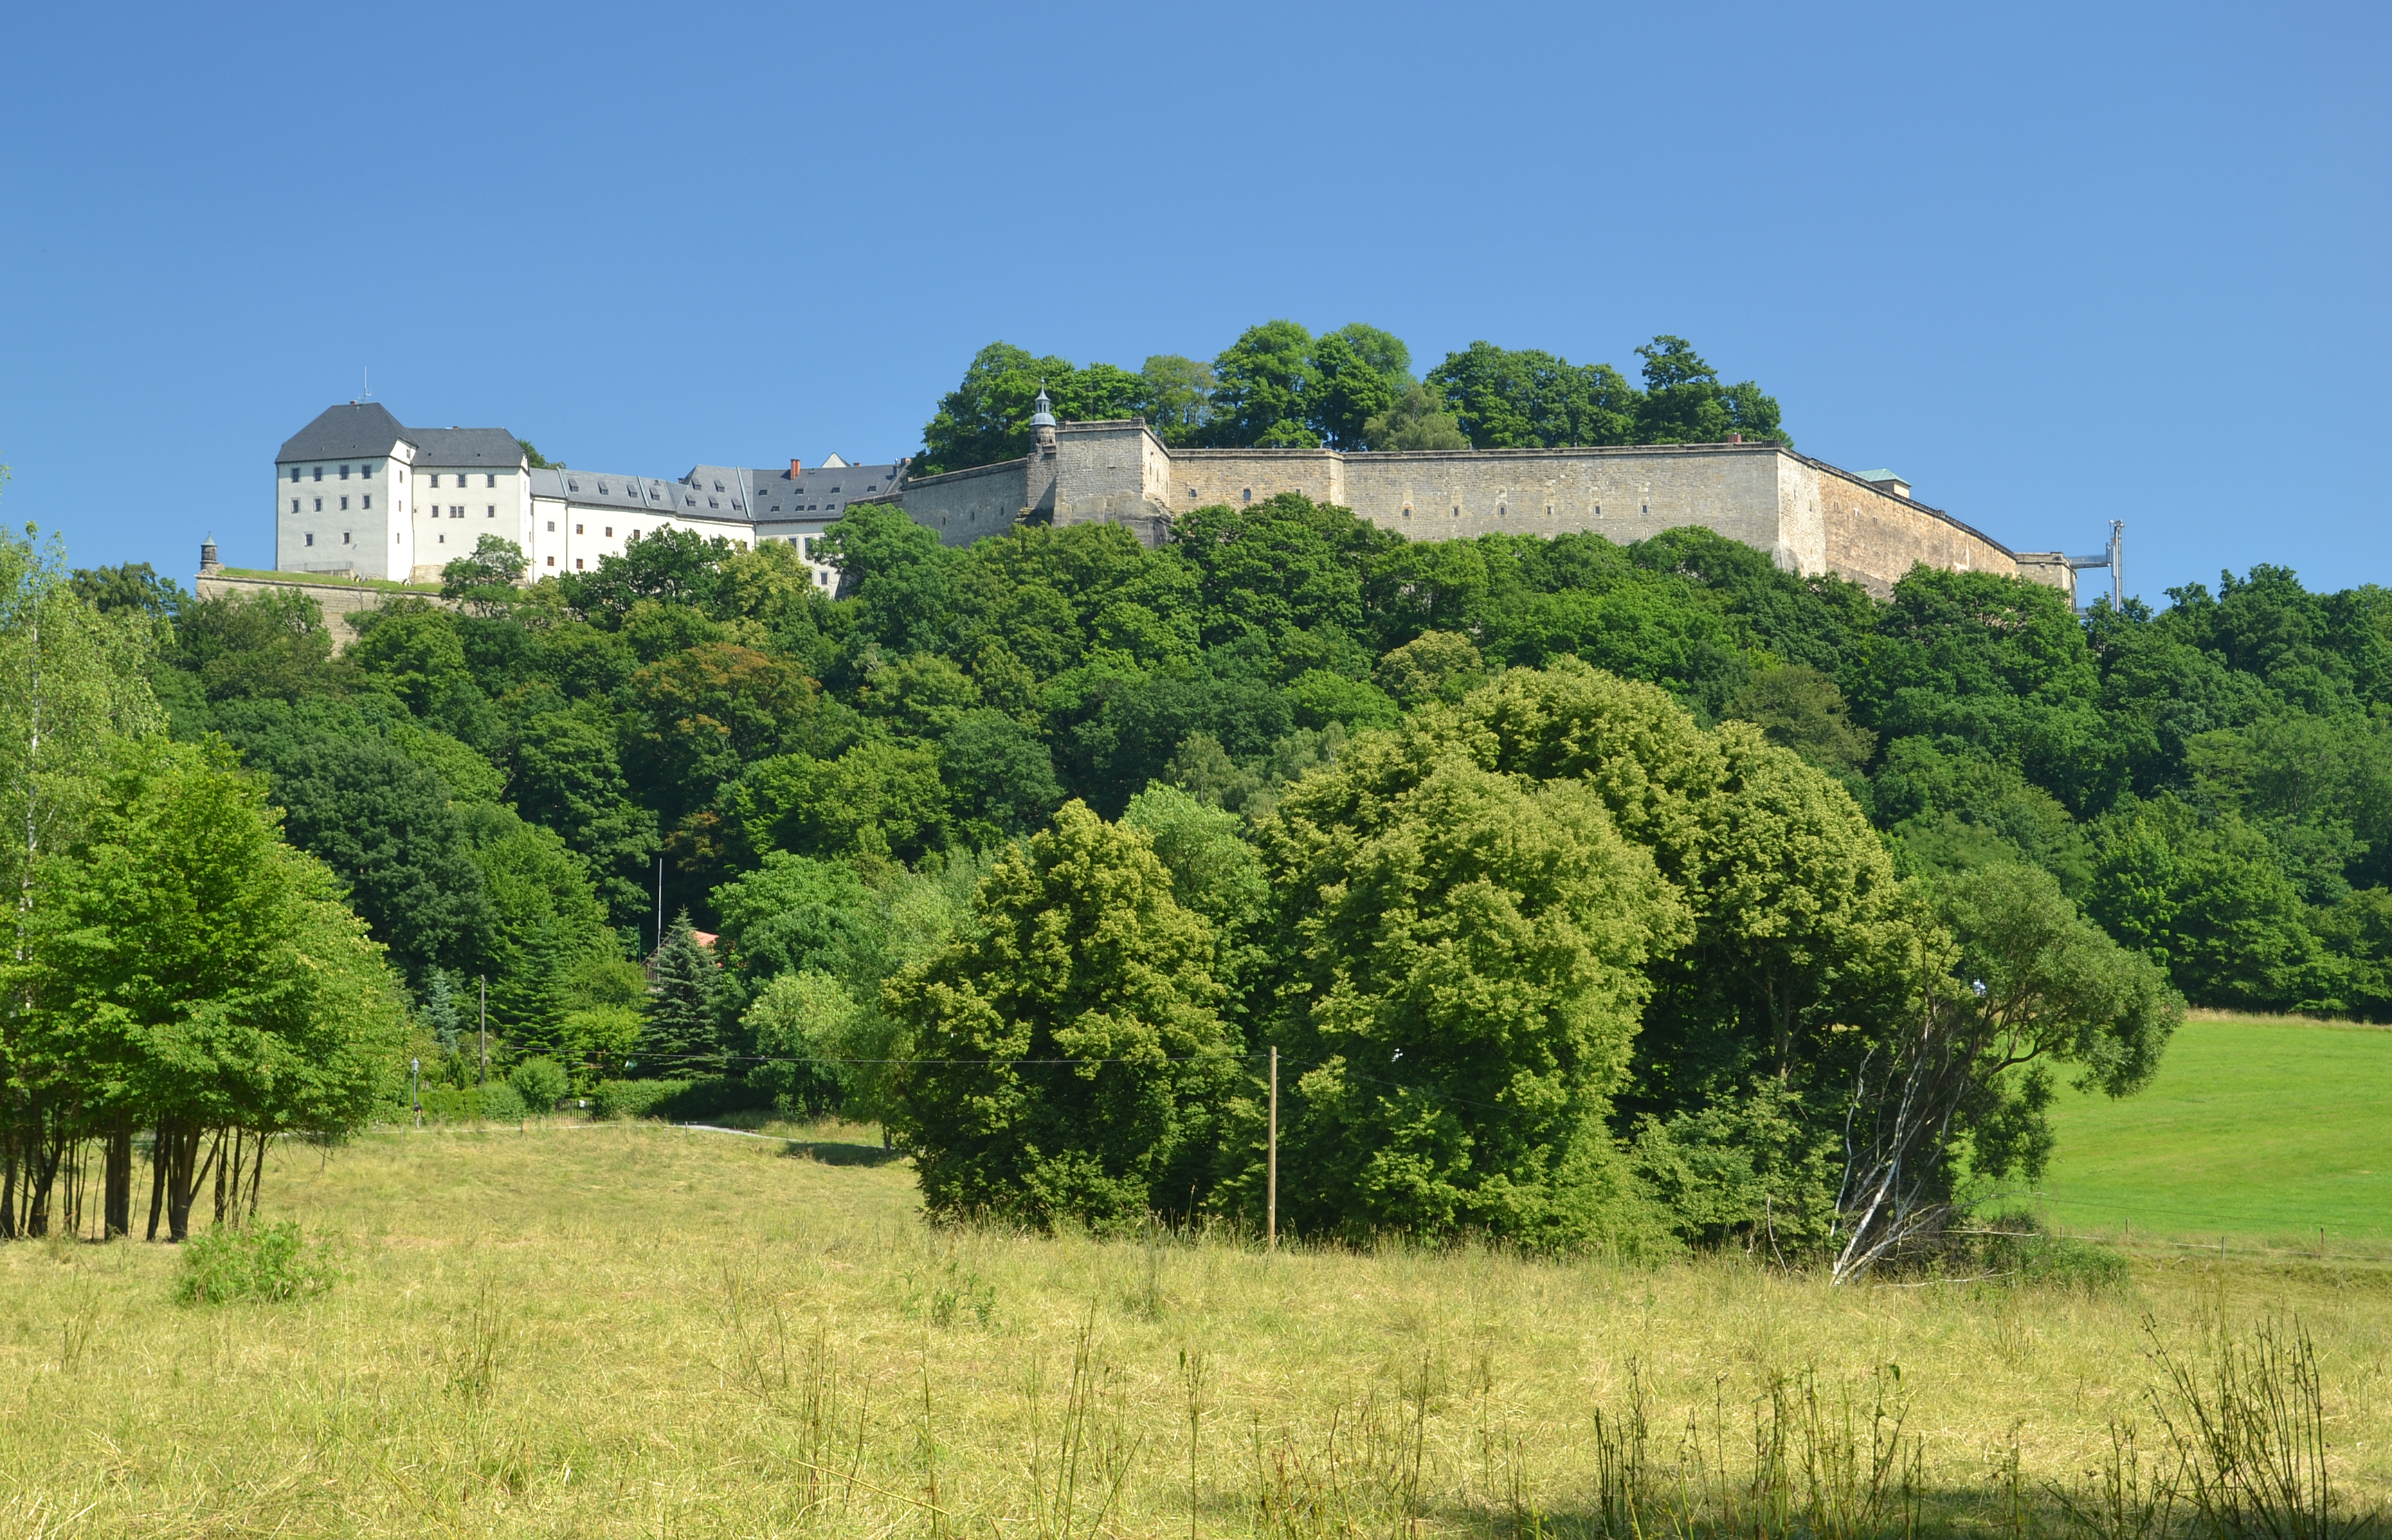 Festung Königstein (by Pudelek)